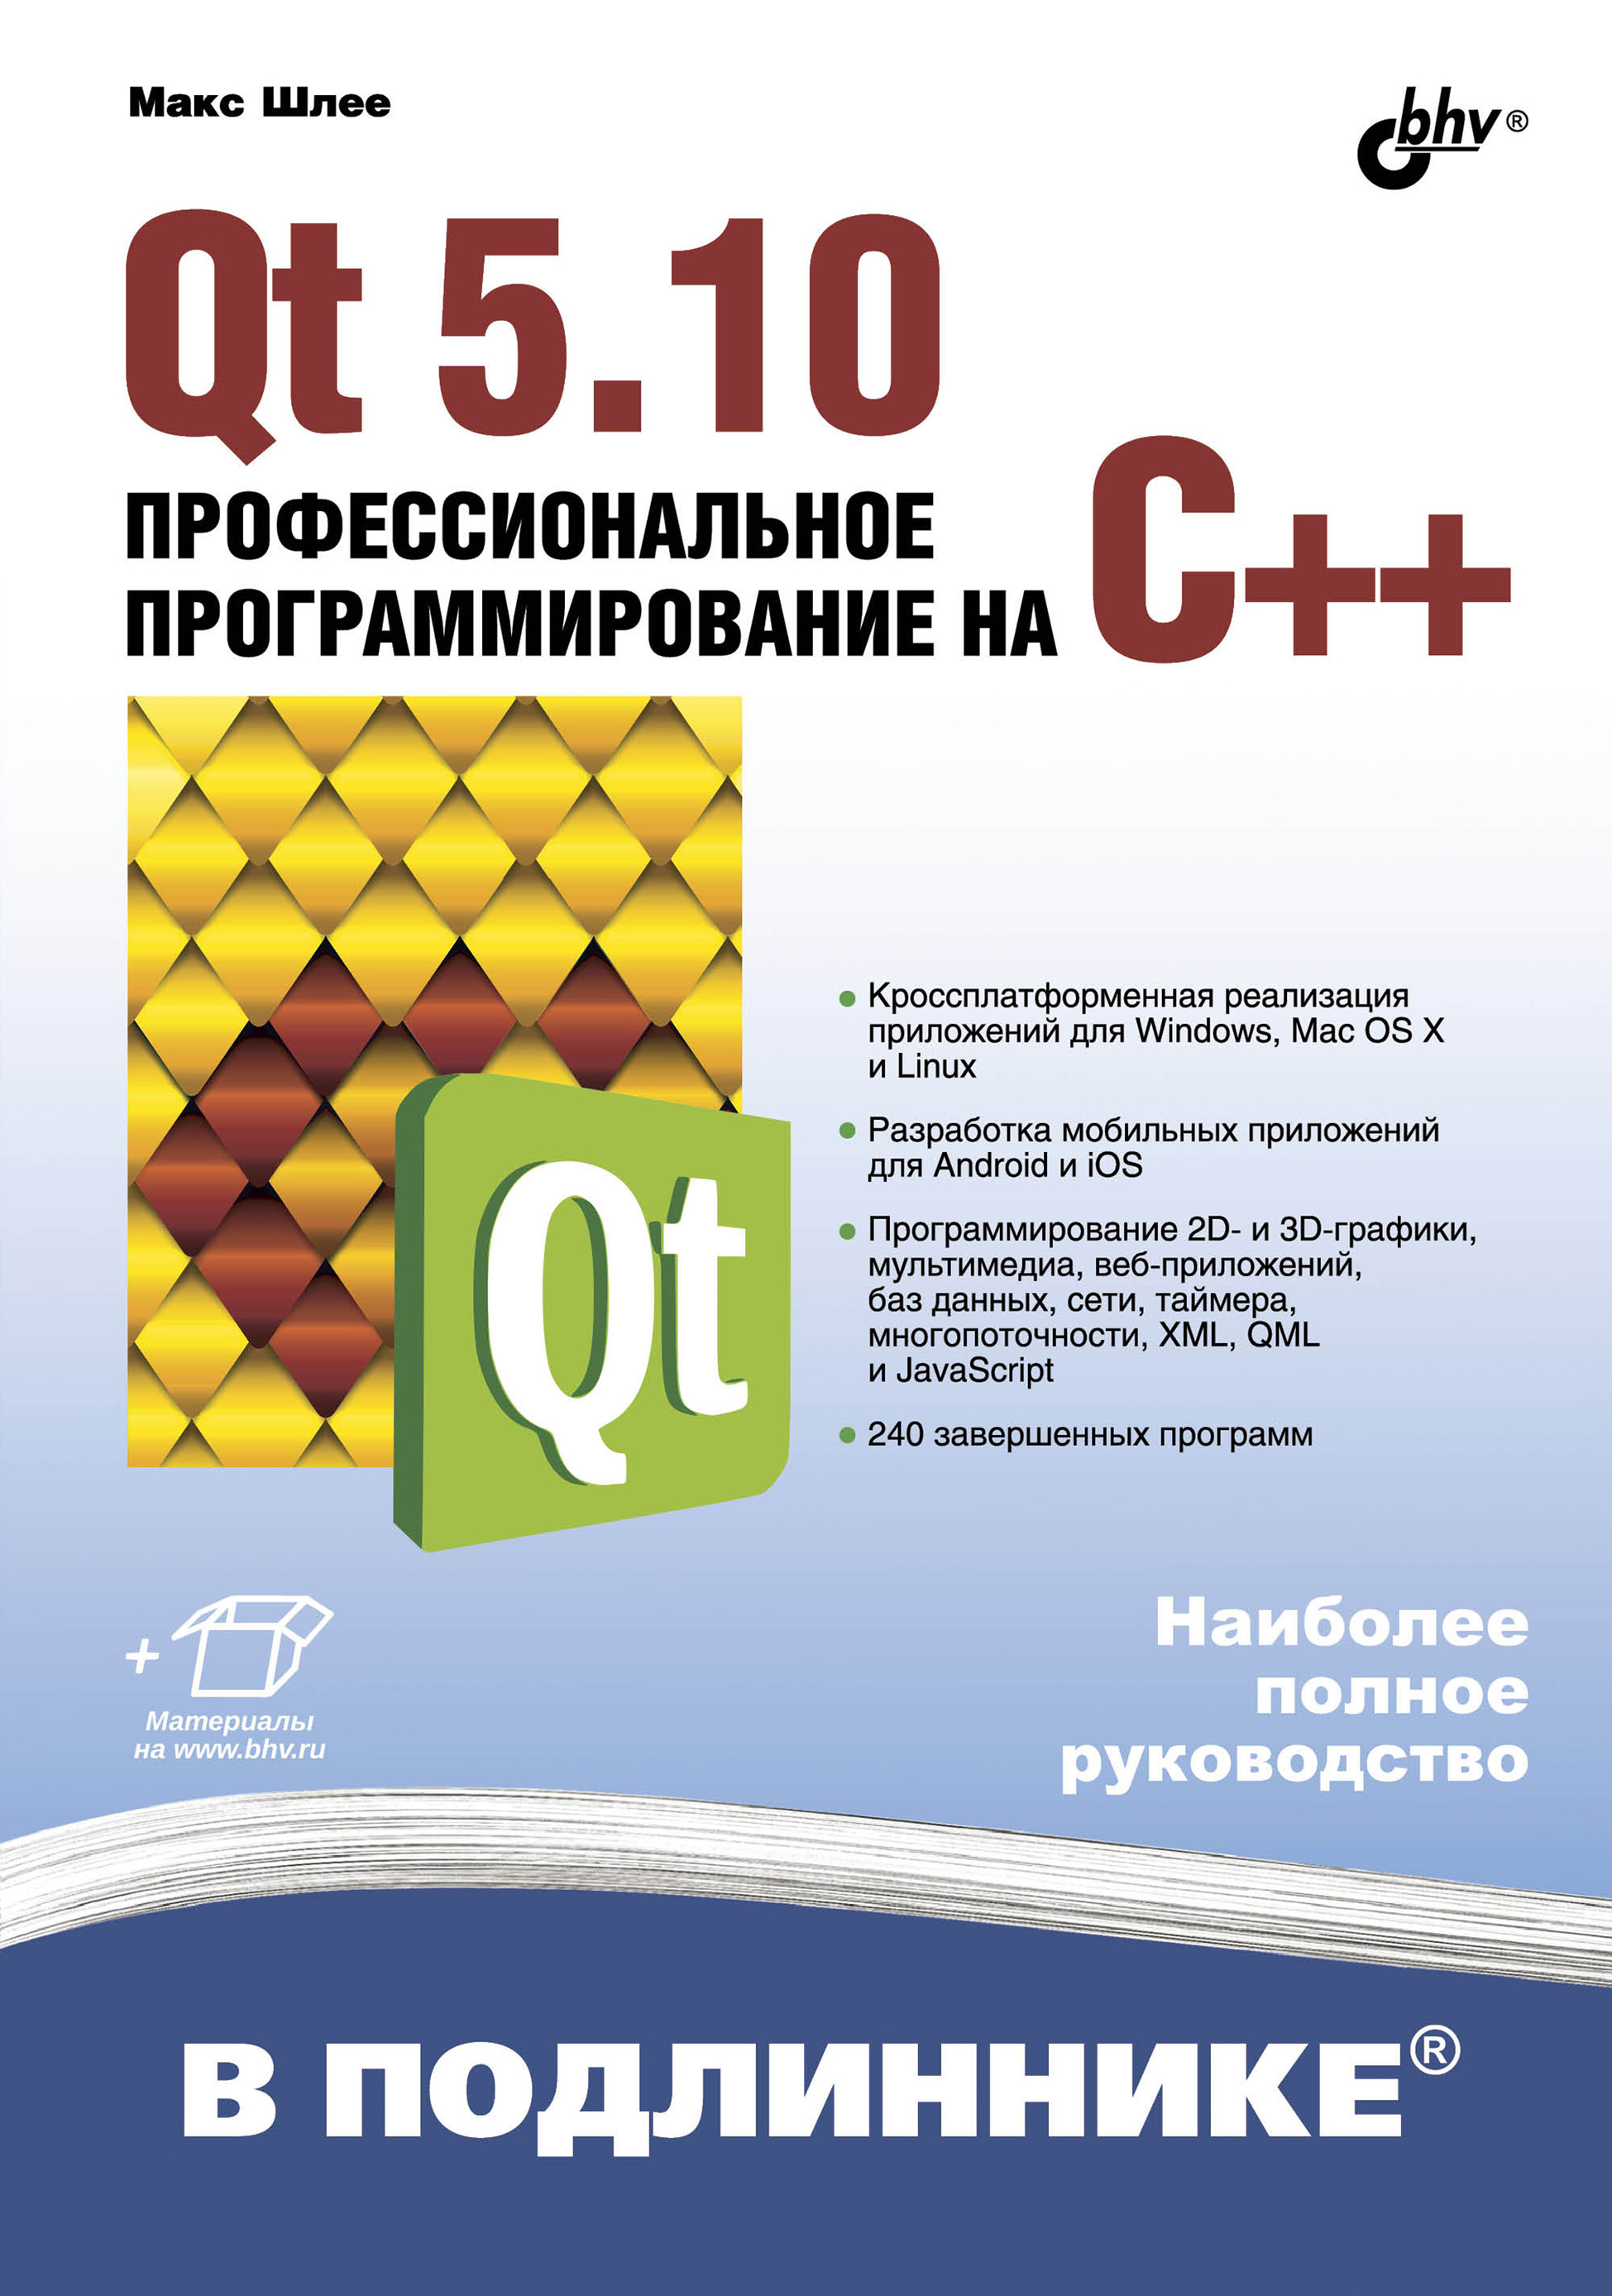 Книга В подлиннике. Наиболее полное руководство Qt 5.10. Профессиональное программирование на C++ созданная Макс Шлее может относится к жанру программирование, руководства. Стоимость электронной книги Qt 5.10. Профессиональное программирование на C++ с идентификатором 40083994 составляет 960.00 руб.